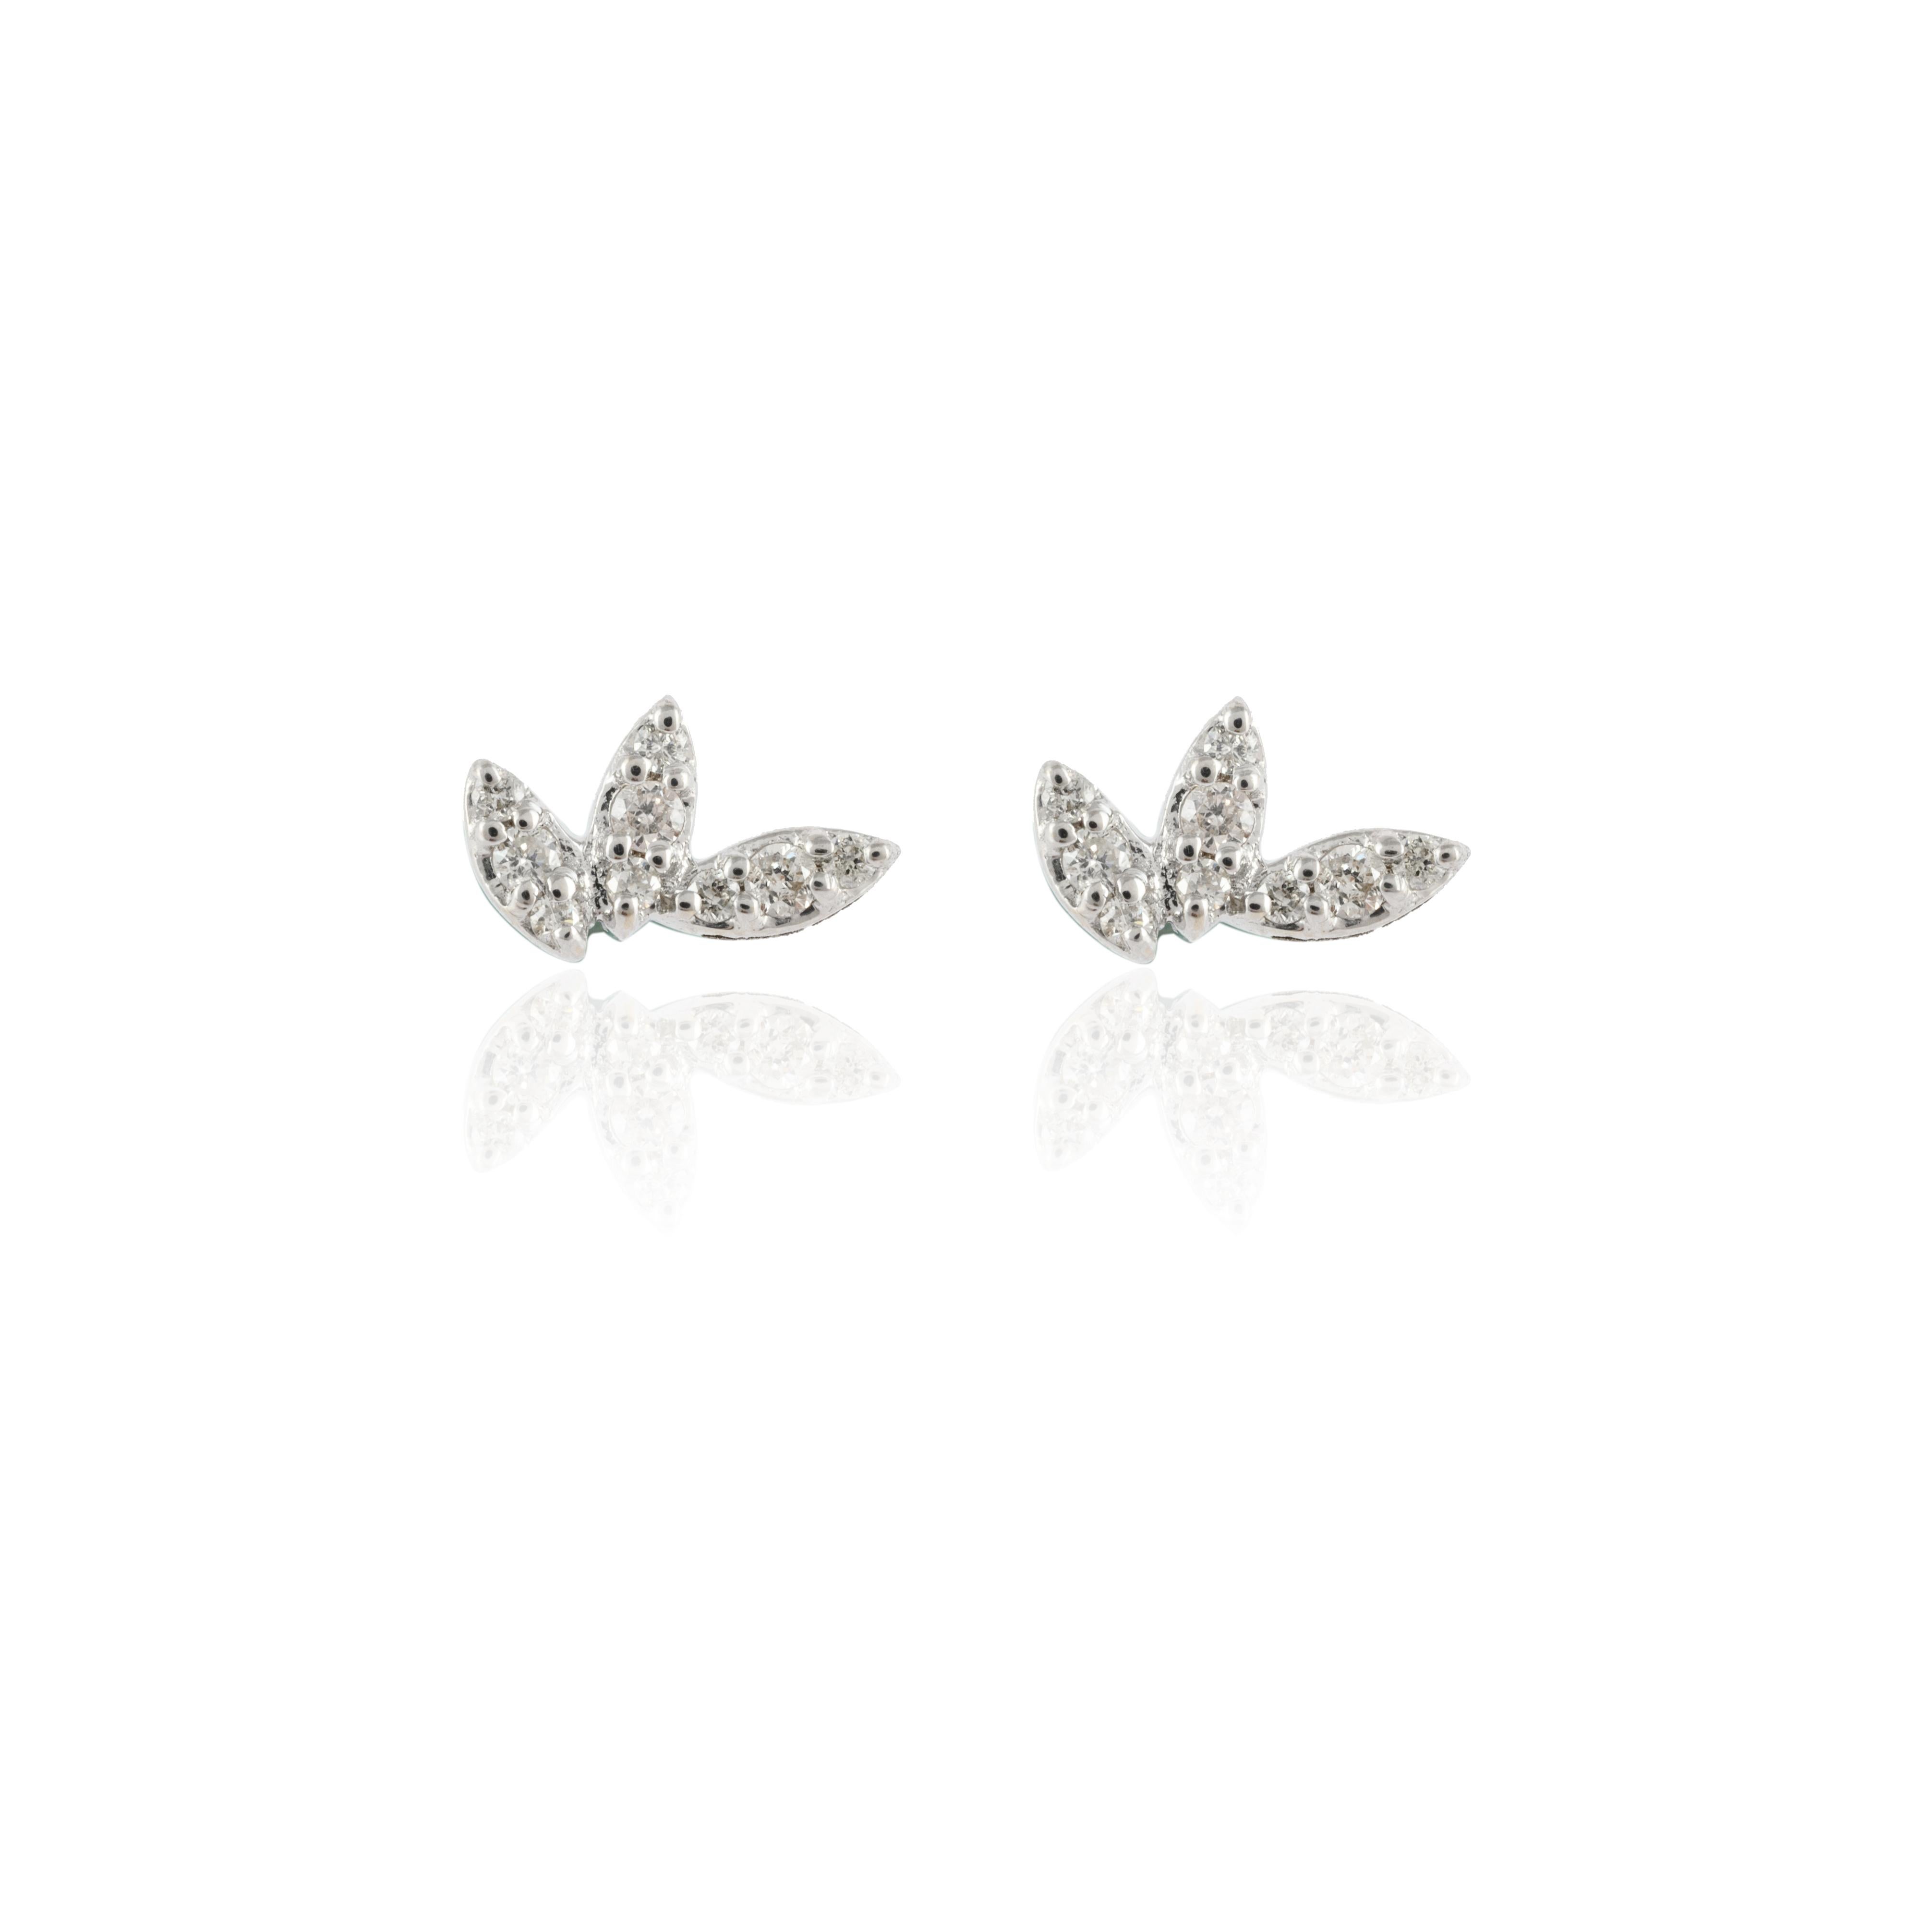 Zierliche Diamantblatt-Ohrringe aus 18 Karat Gold, die Ihren Look unterstreichen. Sie brauchen Ohrstecker, um mit Ihrem Look ein Statement zu setzen. Diese Ohrringe mit rund geschliffenen Diamanten sorgen für ein funkelndes, luxuriöses Aussehen.
Der